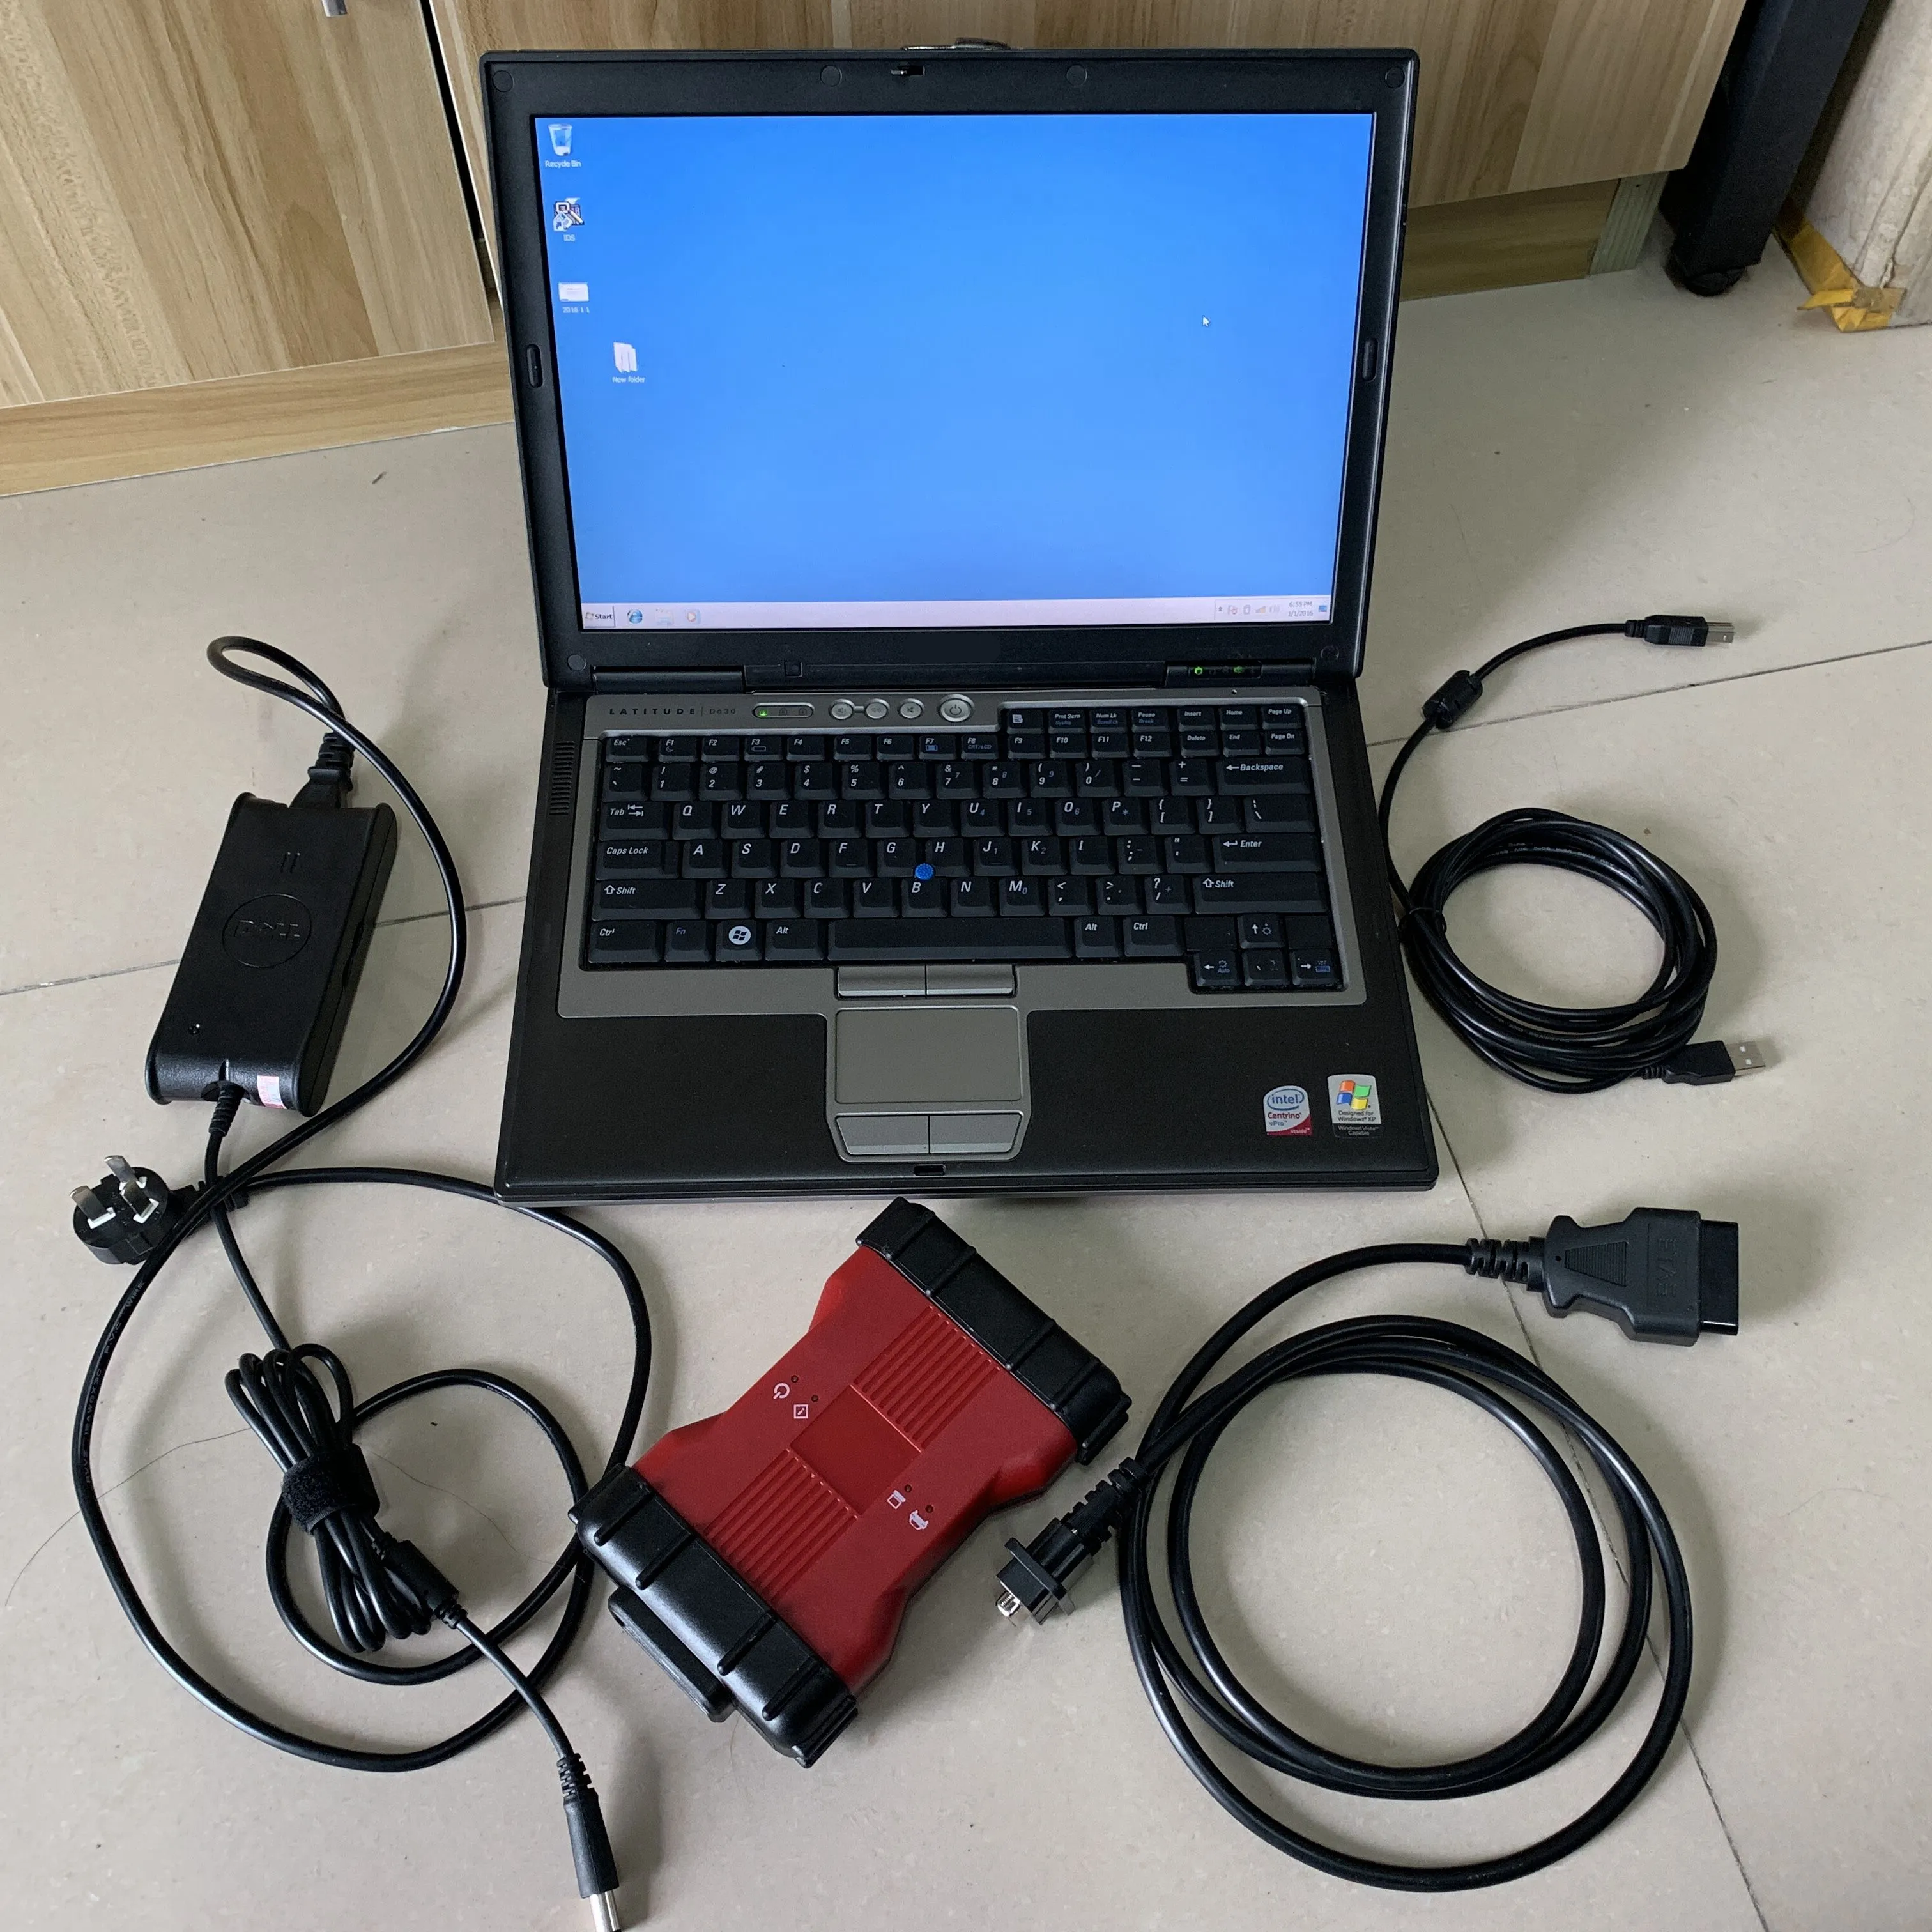 Voor F-ord VCM2 Diagnose Tool voor VCM2 scanner IDS V128/JLR V128 obd2 tool vcm 2 met 320 GB HDD in Gebruikte laptop D630